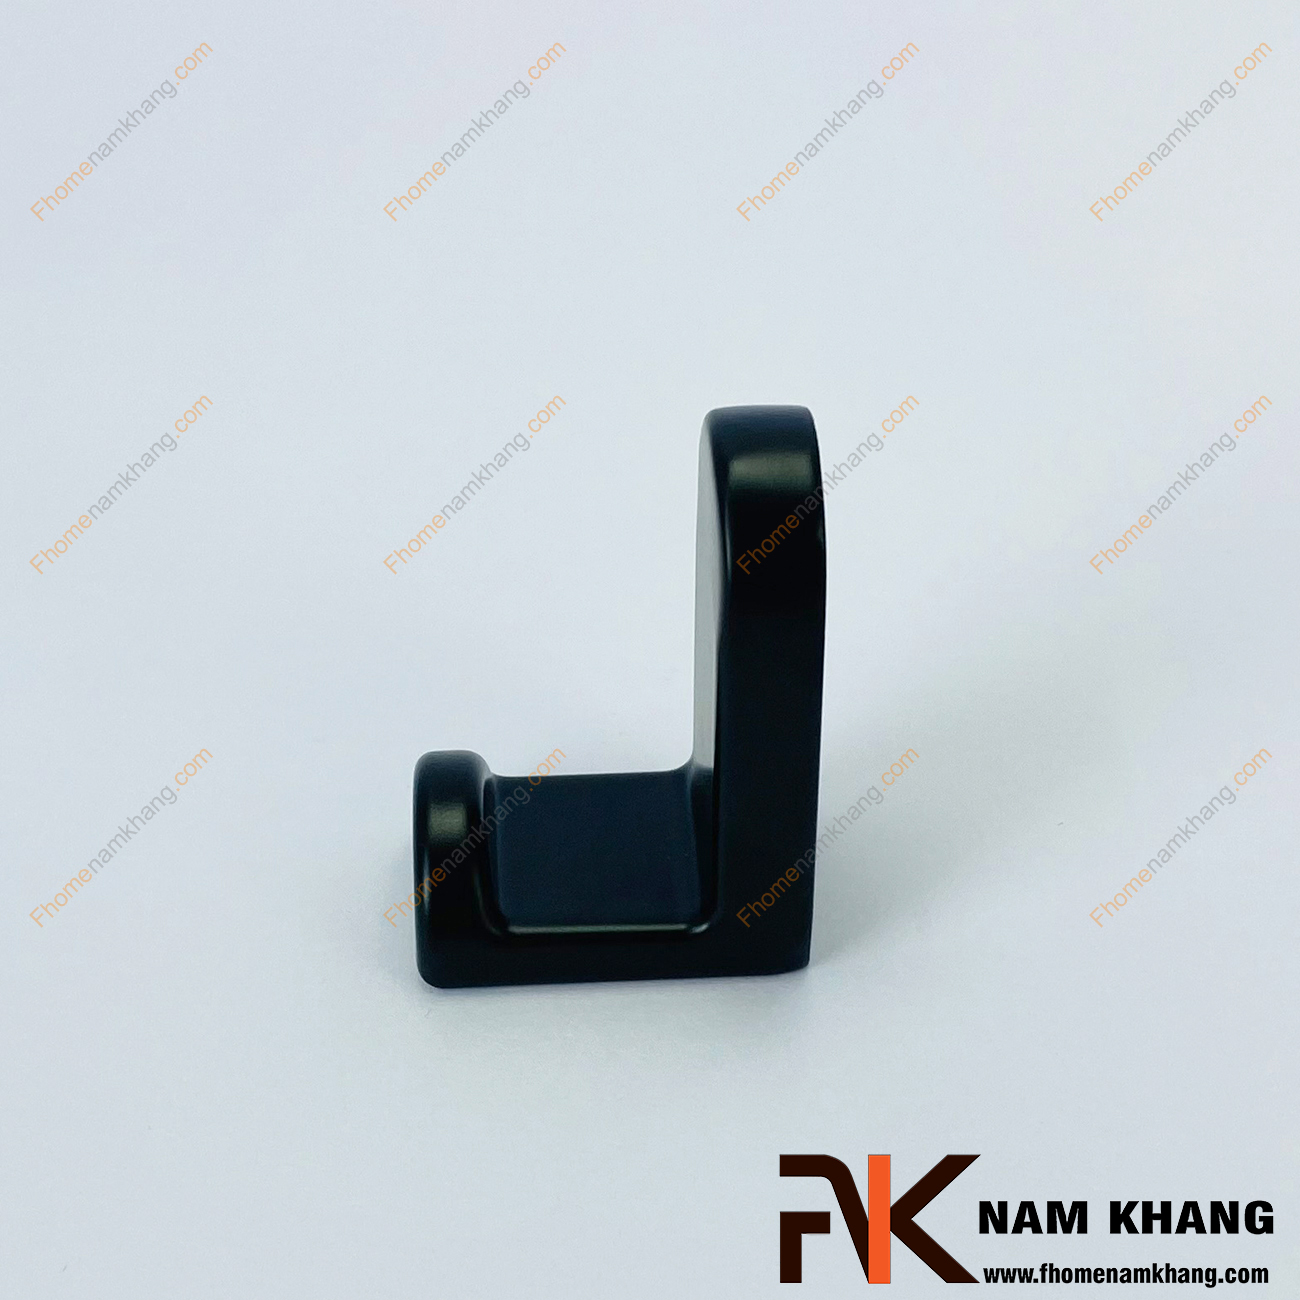 Móc treo tường dạng đứng màu đen mờ NK121L-D, dòng móc treo kiểu đứng có thiết kế liền khối gồm 2 size lớn nhỏ và có thể lắp ghép thành một bộ